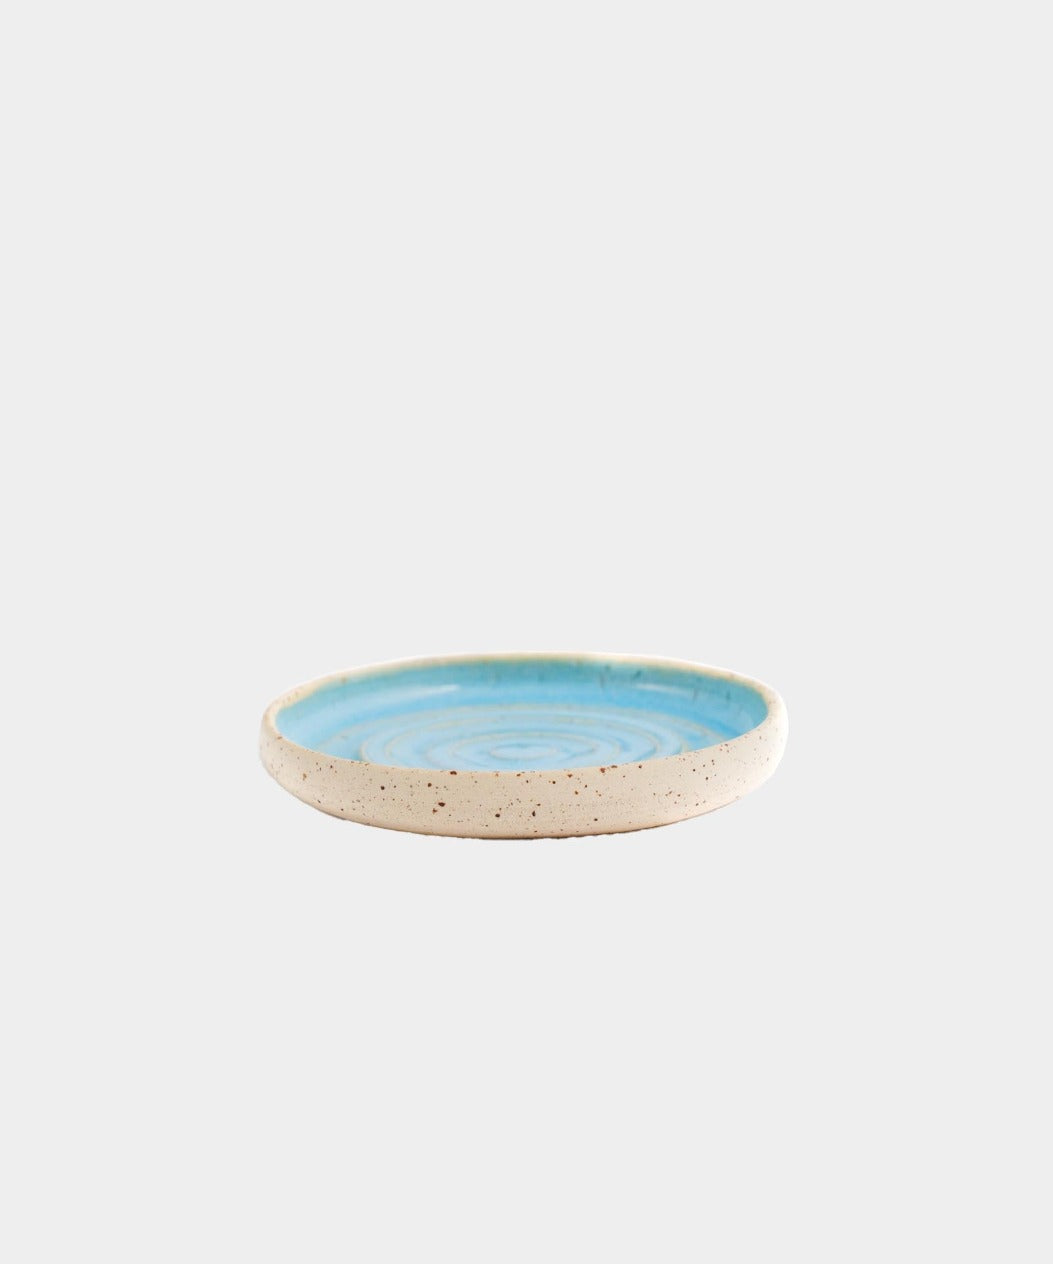 Håndlavet Keramik Sæbeskål | SKY by Vang | Kerama 1